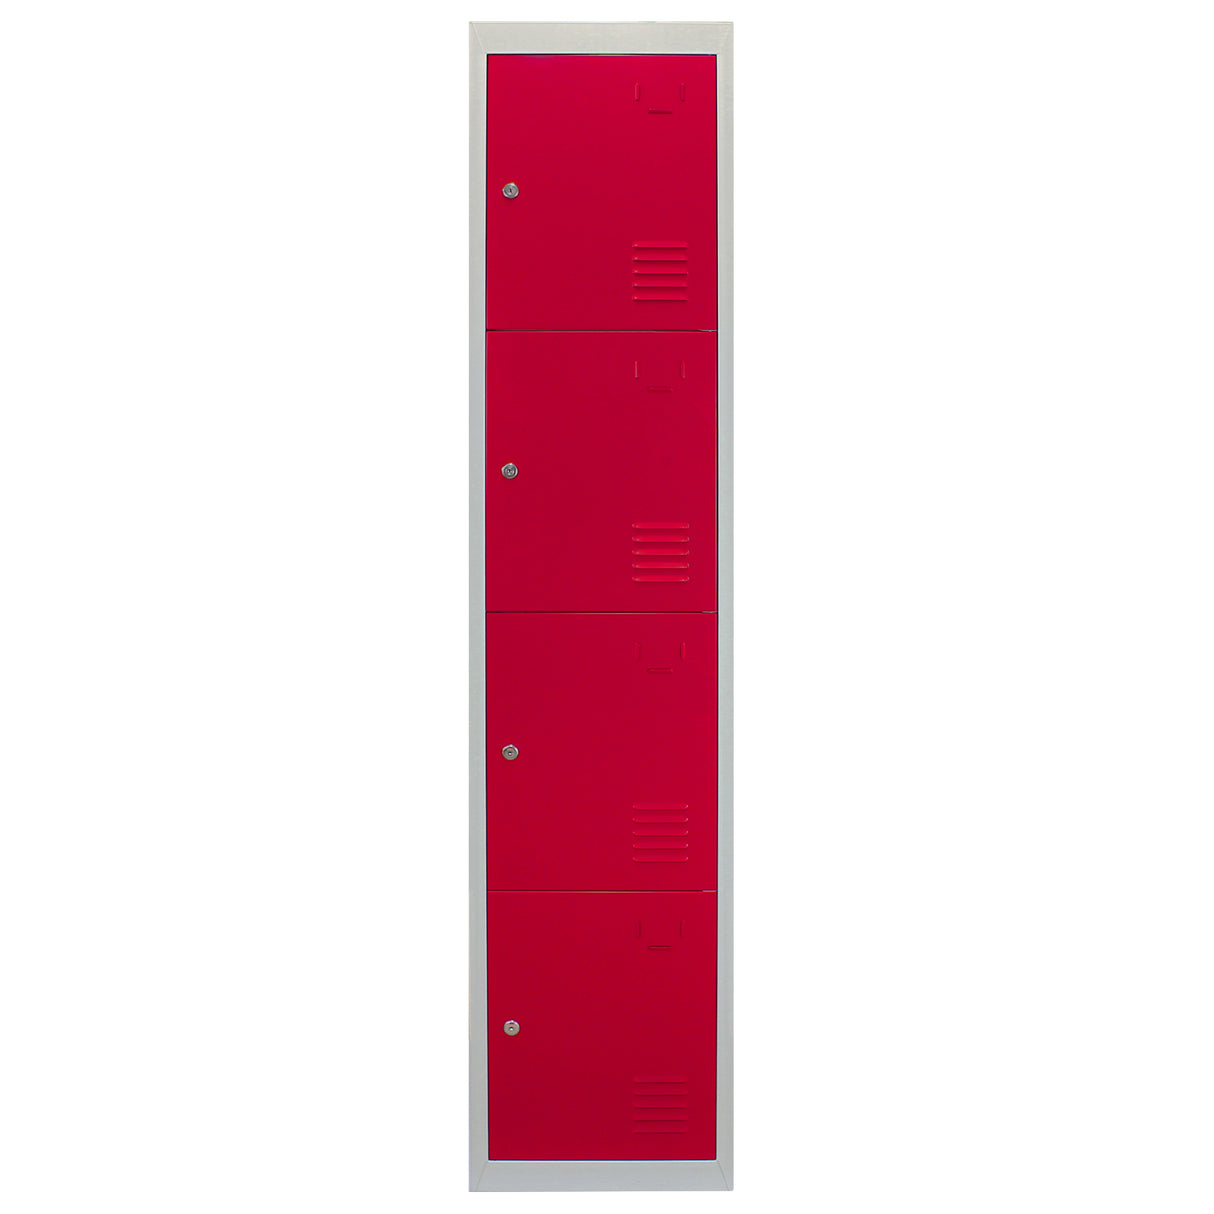 Metal Storage Lockers - Four Doors, Flatpacked, Red